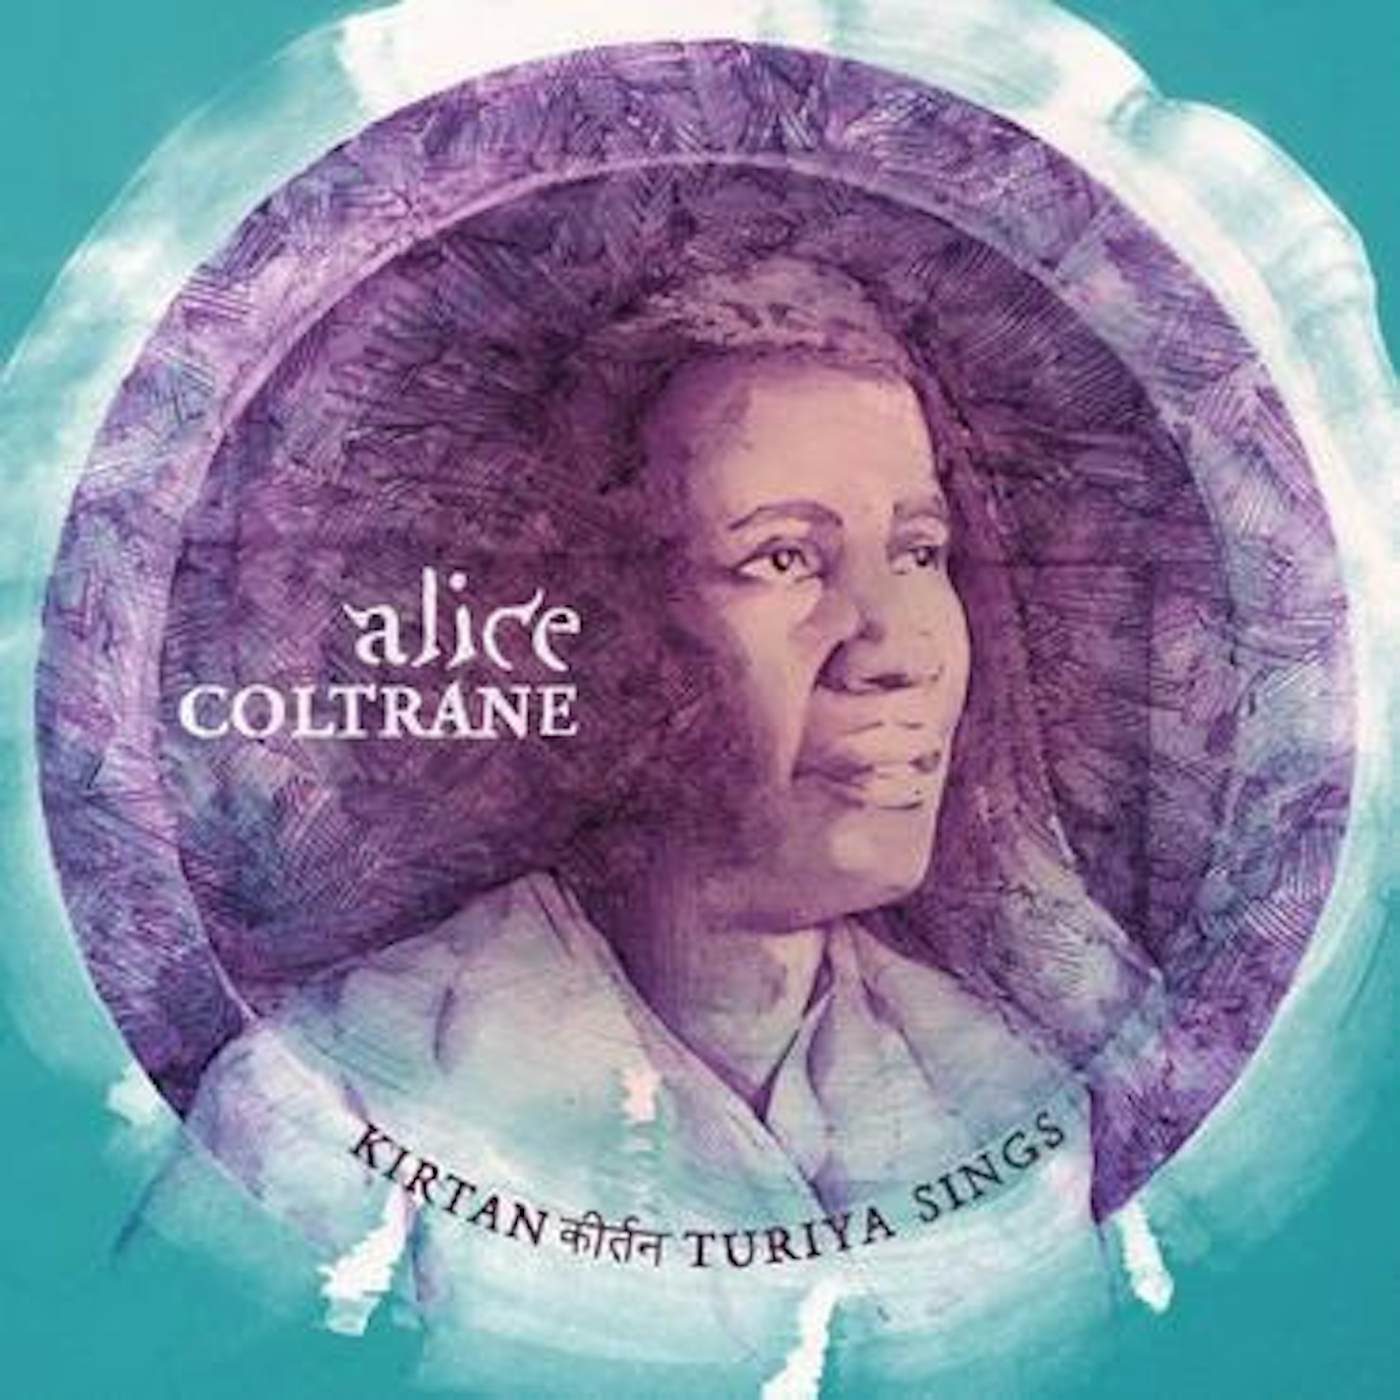 Alice Coltrane KIRTANA TRIYA SINGS CD